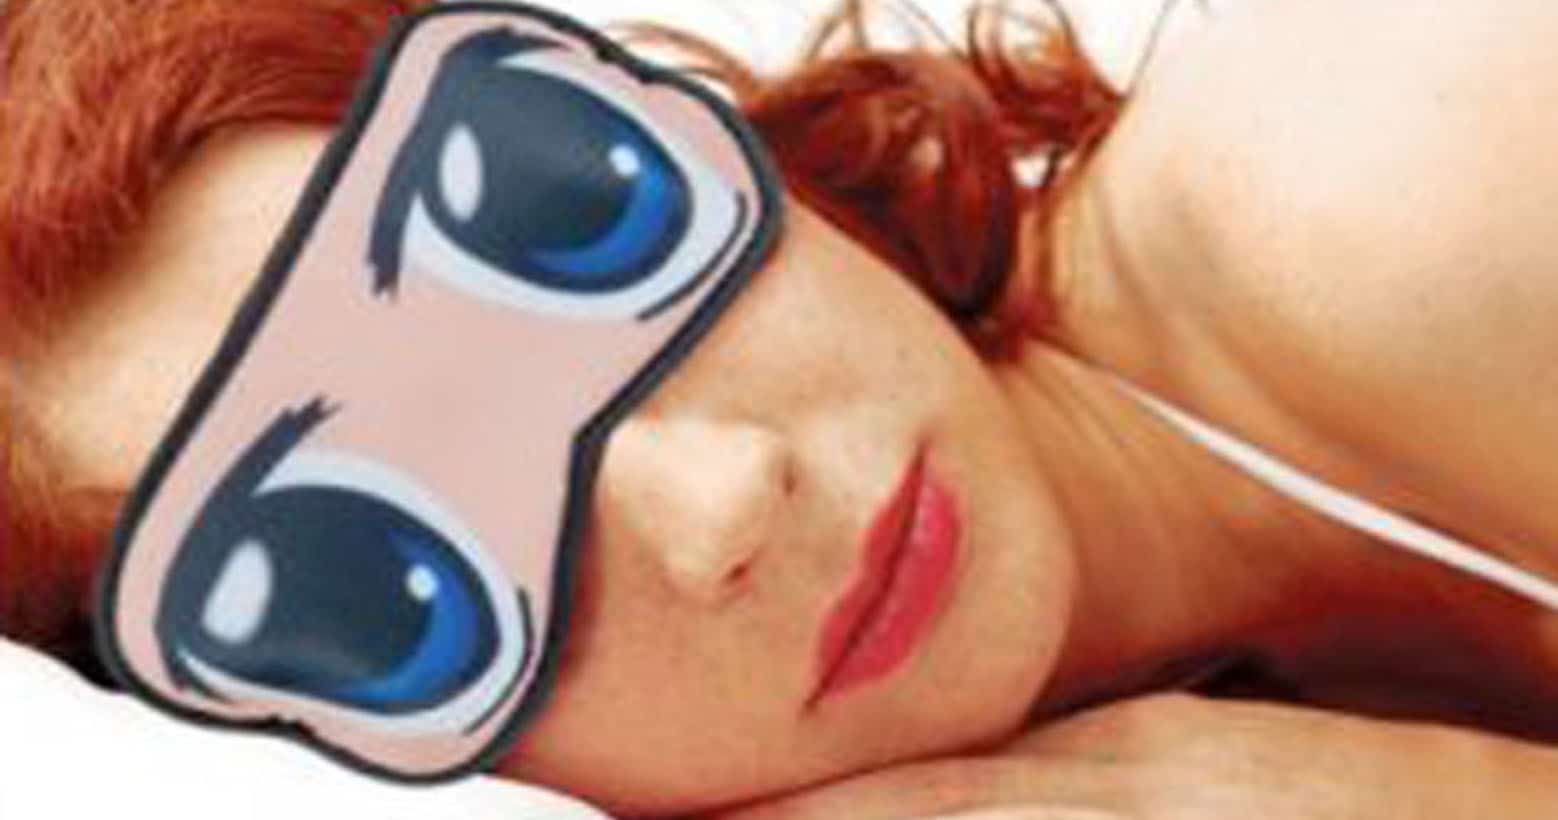 Anime Eyes Sleep Mask